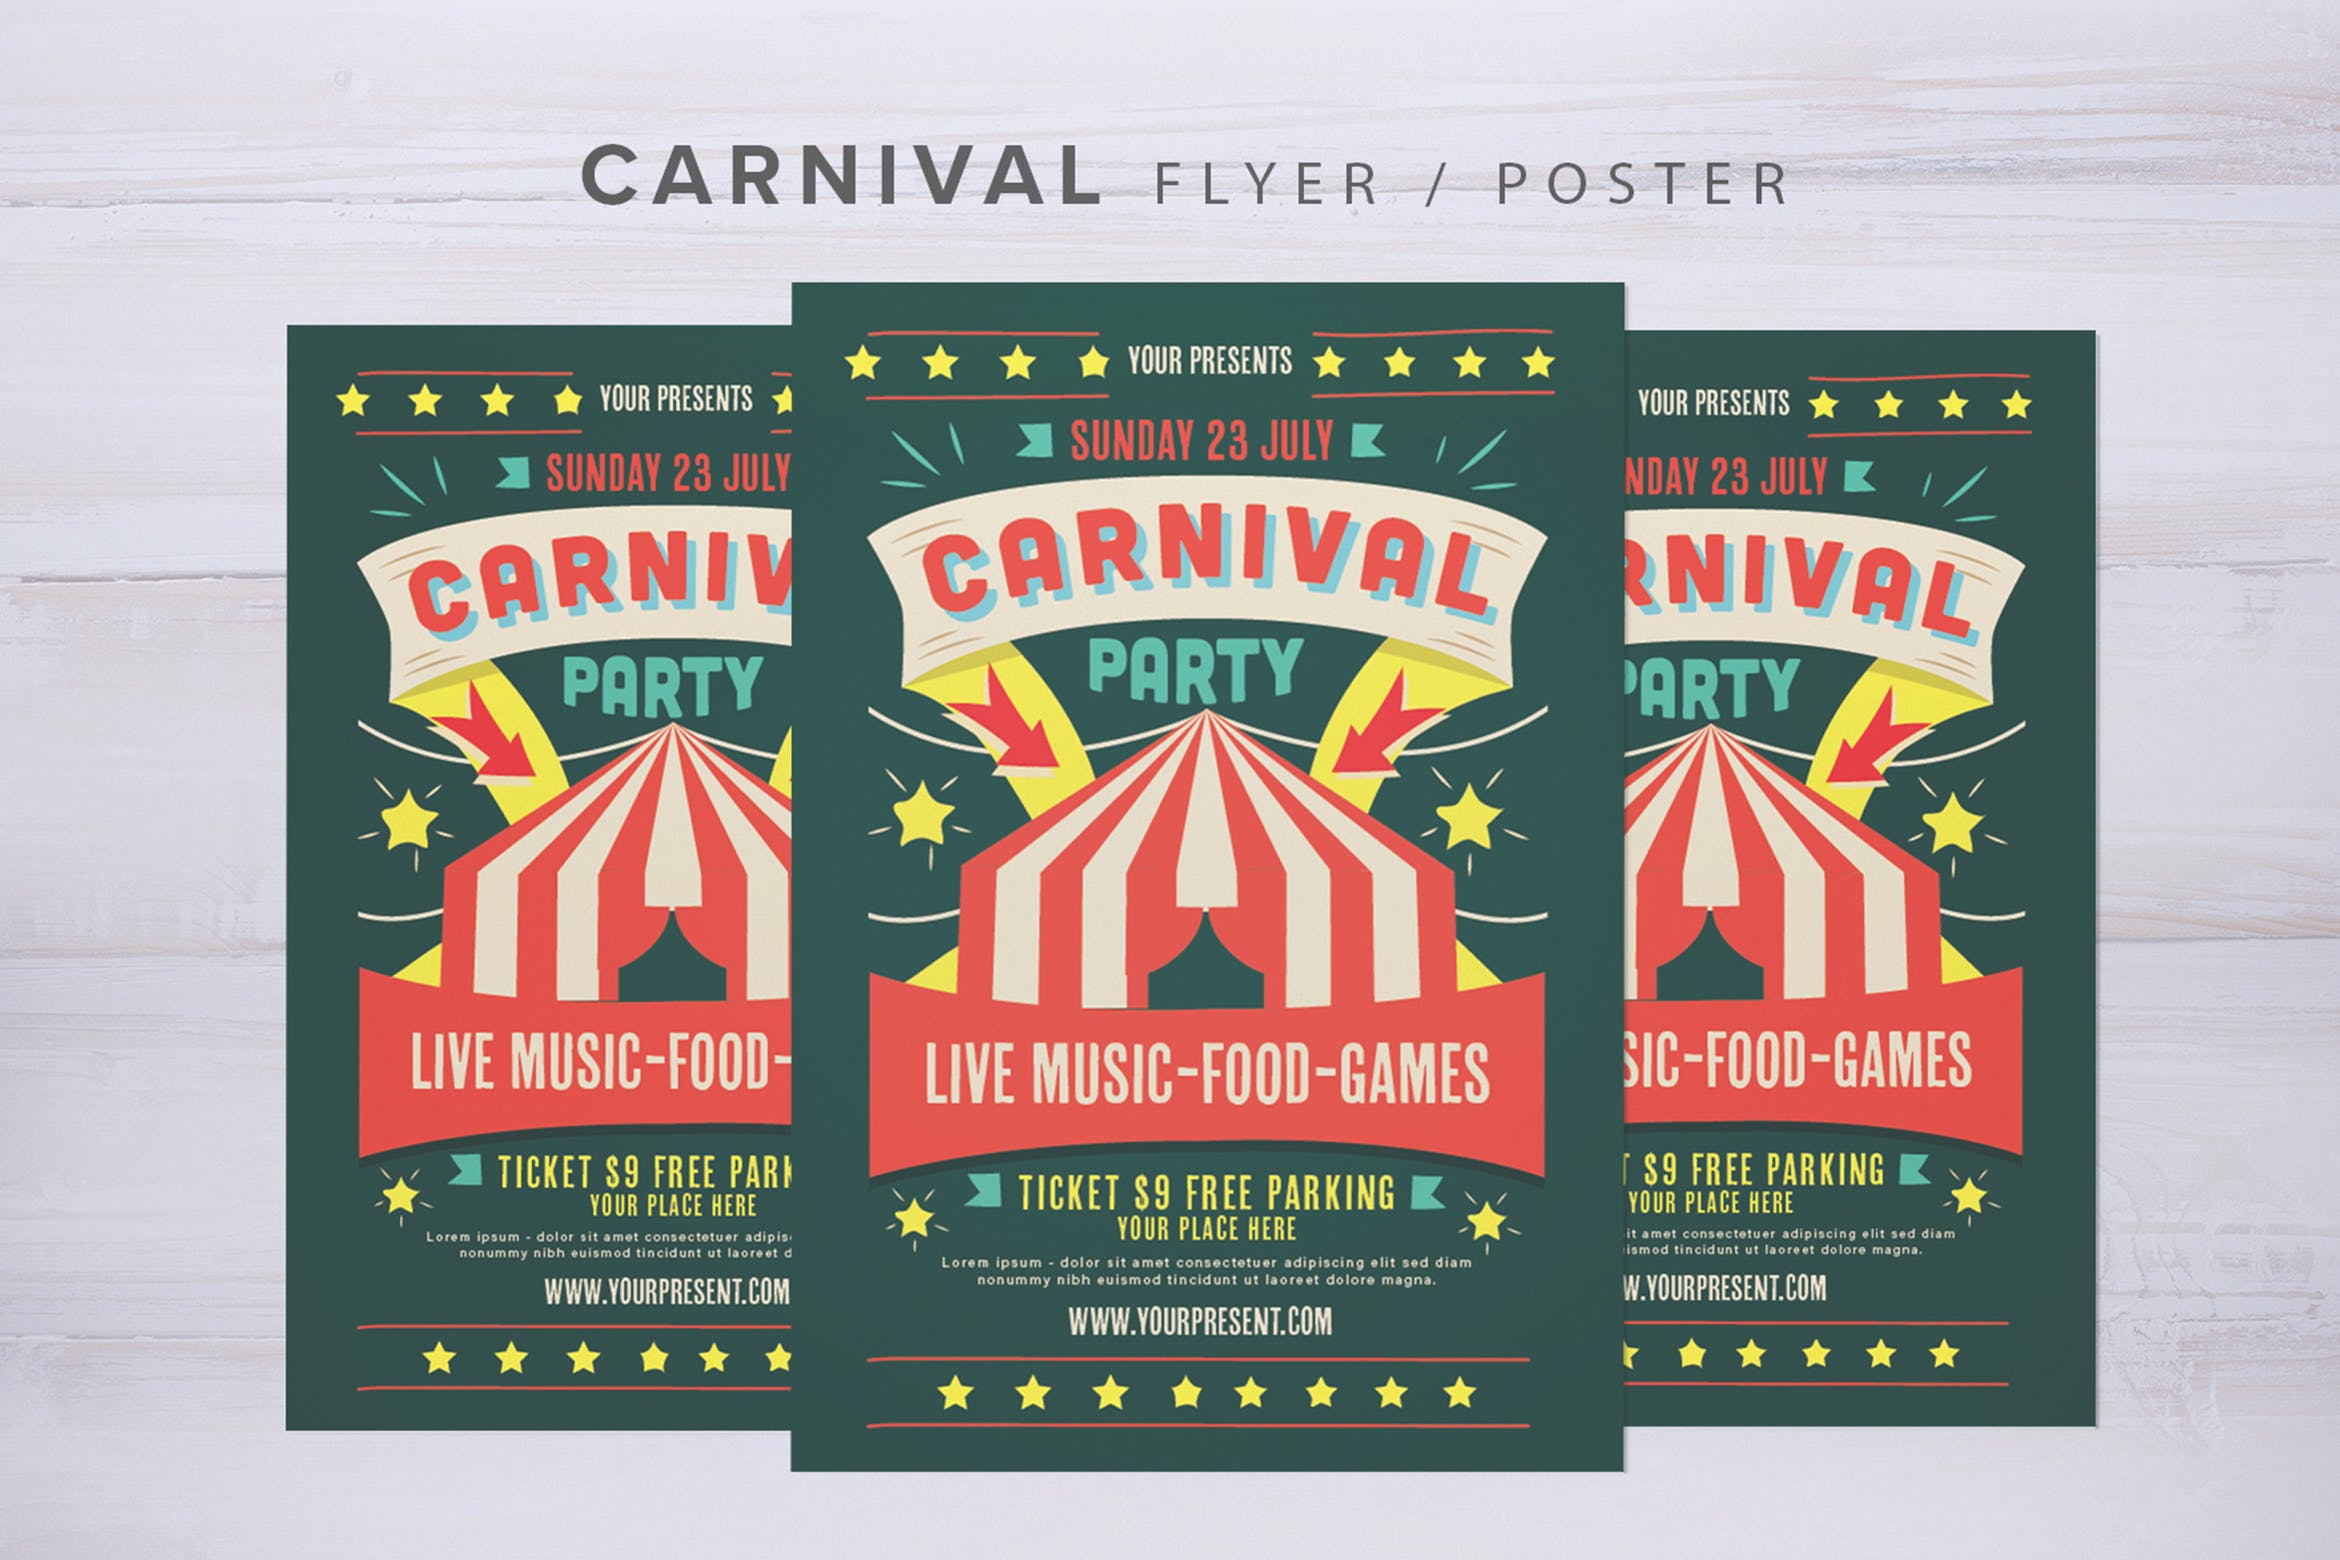 嘉年华假日庆典活动海报传单设计模板 Carnival Flyer插图